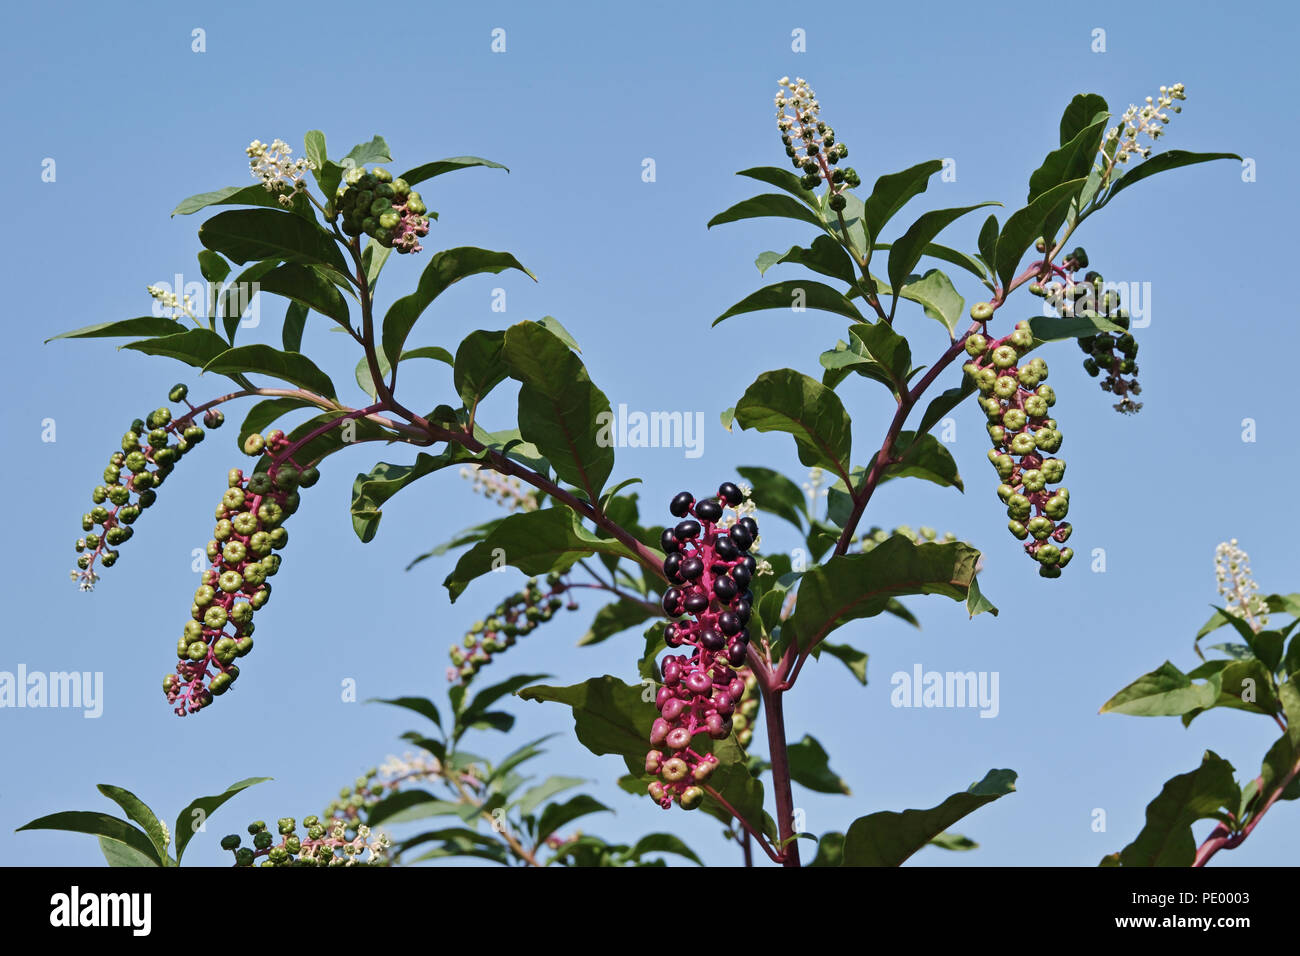 Pokeweed pianta con bacche a vari livelli di maturazione Foto Stock